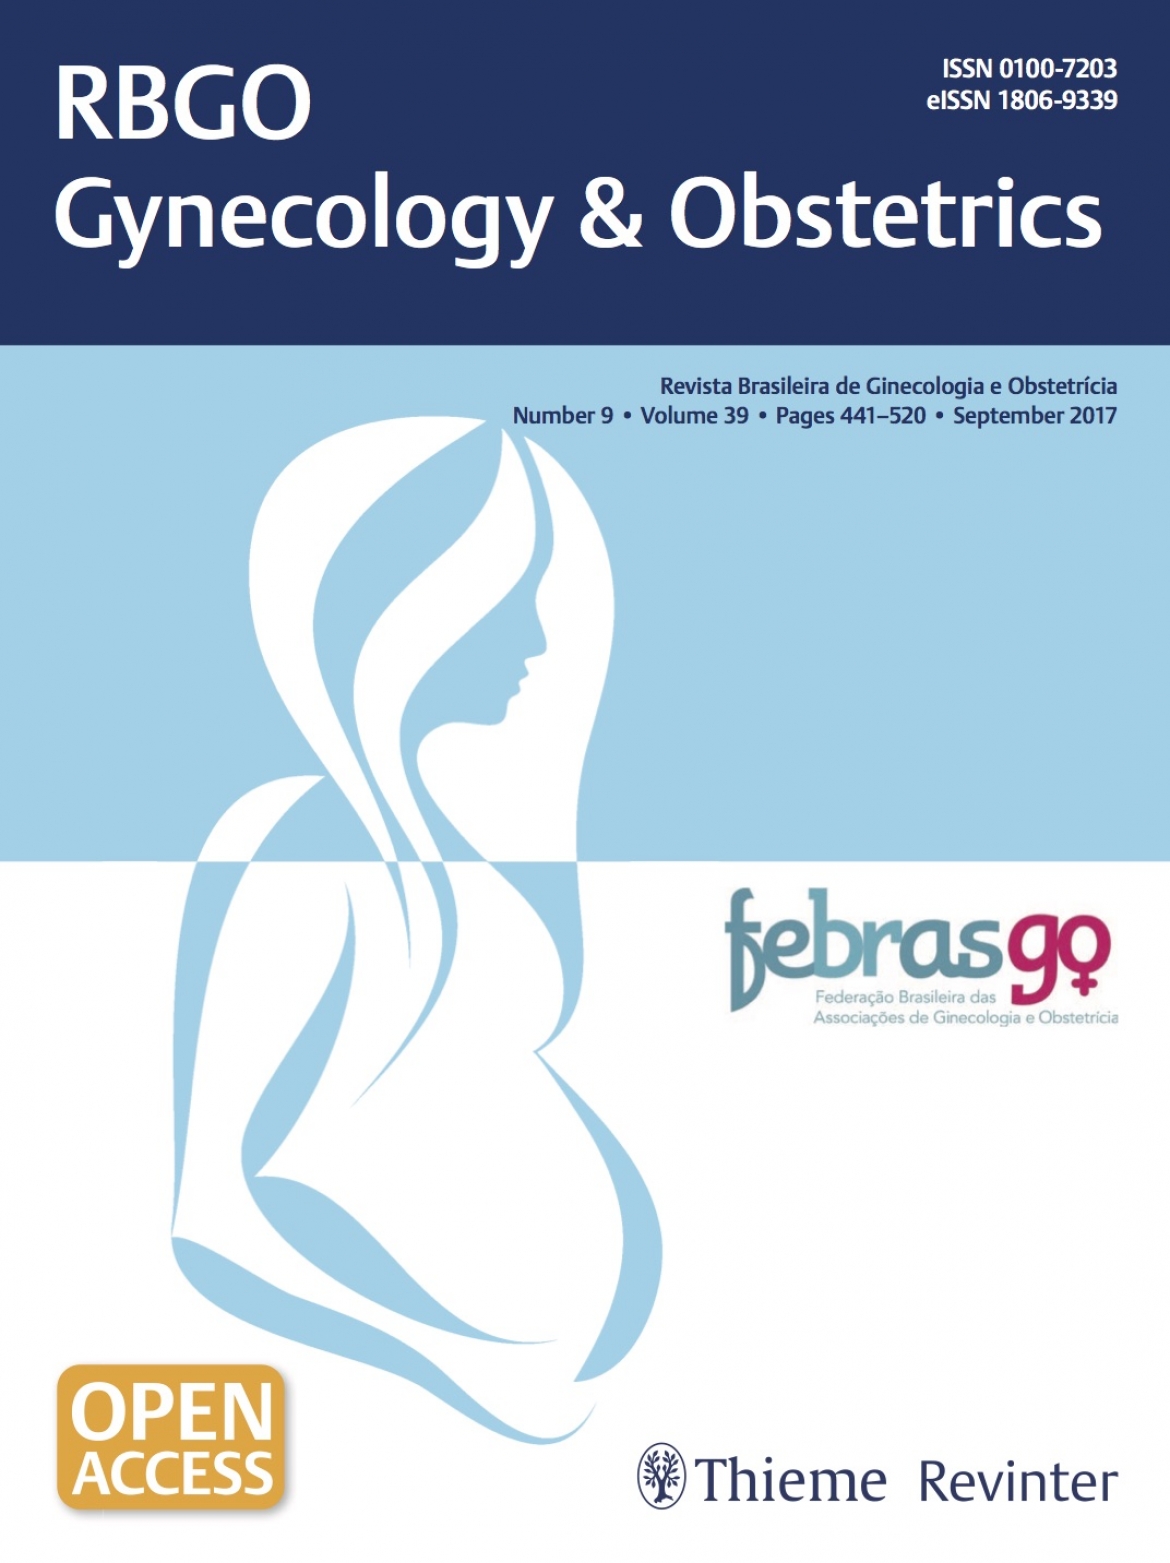 Revista Brasileira de Ginecologia e Obstetrícia – 2017 / Vol. 39 n°9